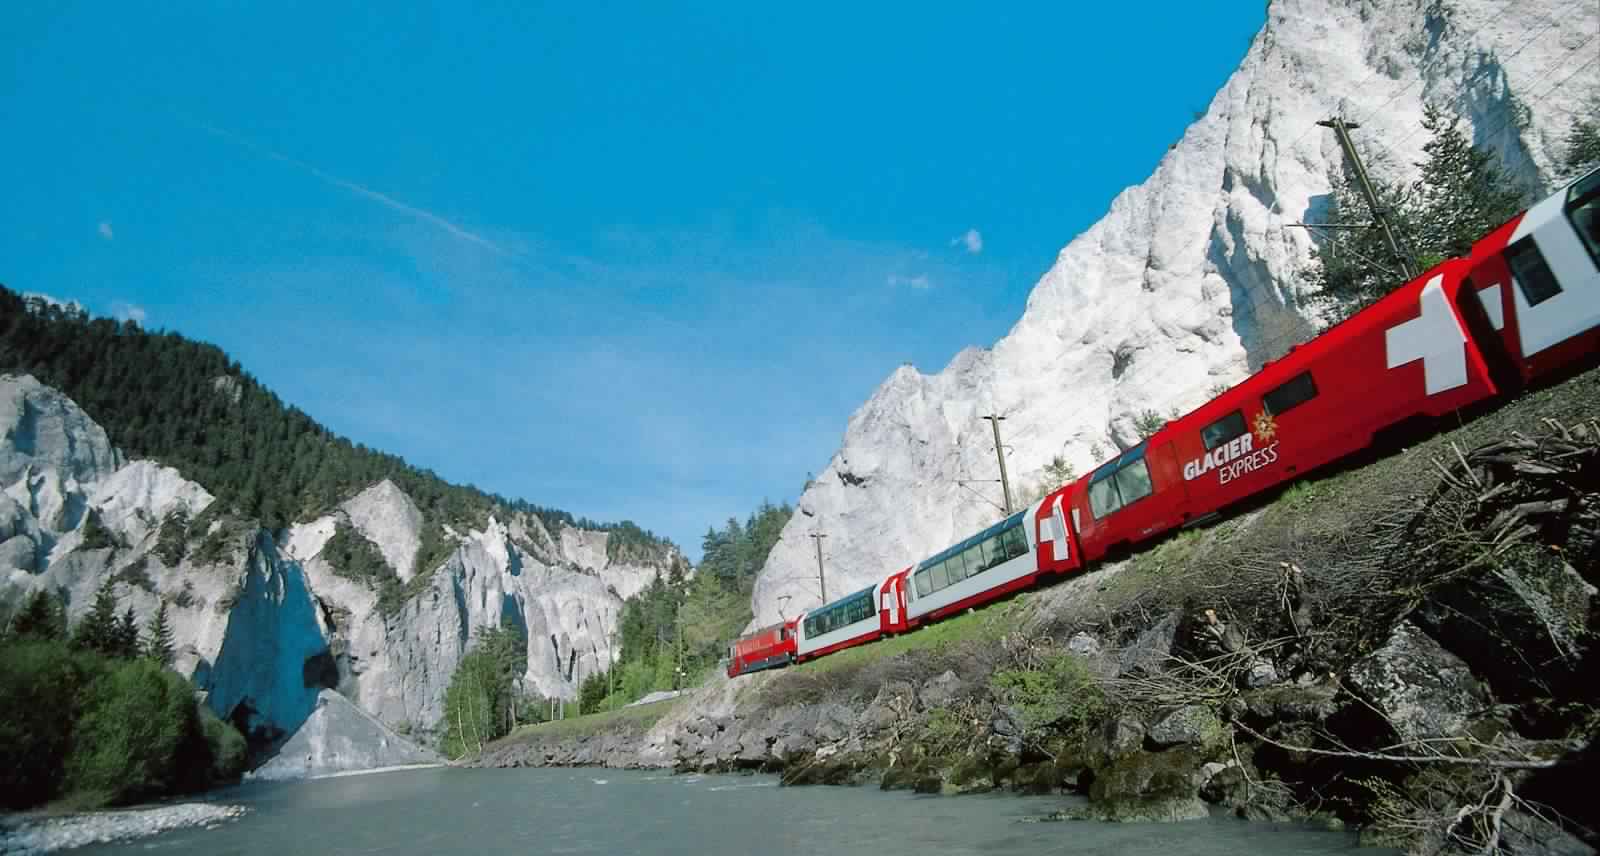 "بالصور" جولة مع قطار جلاسير إكسبريس عبر جبال اﻷلب السويسرية 25